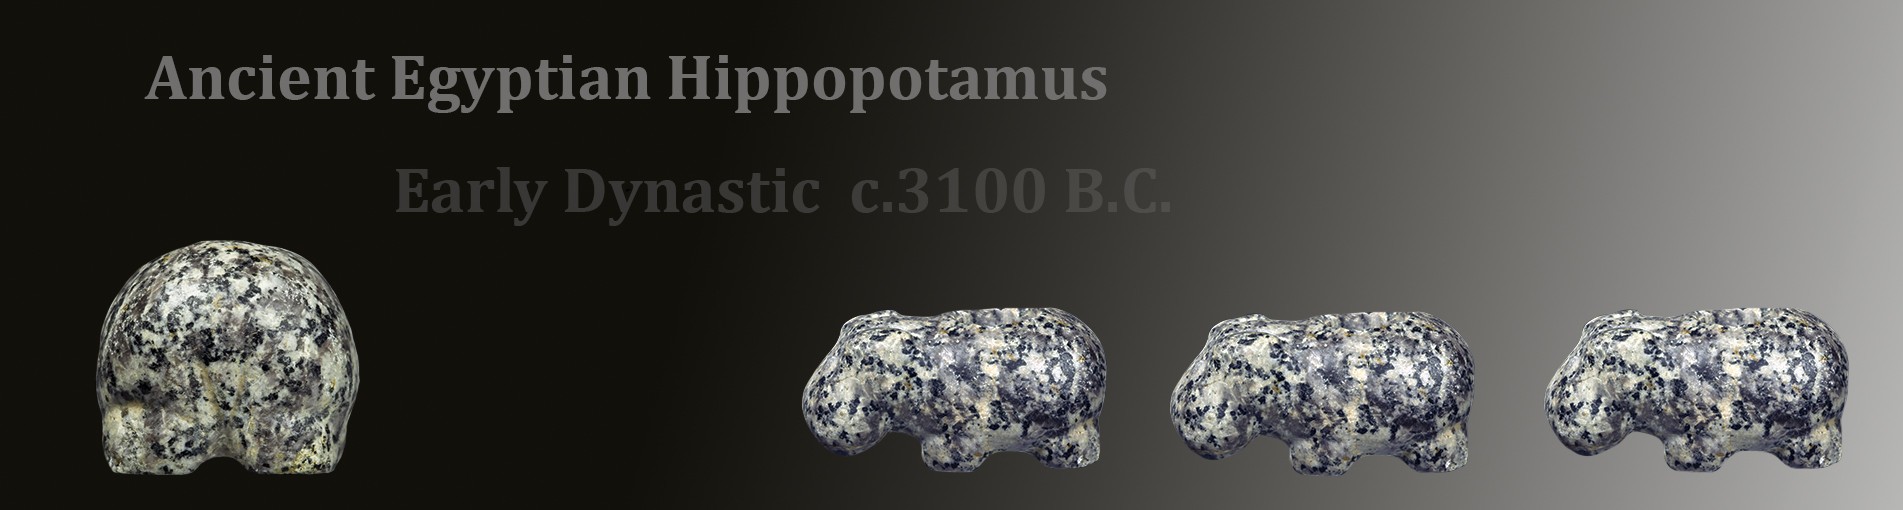 hippo 2020